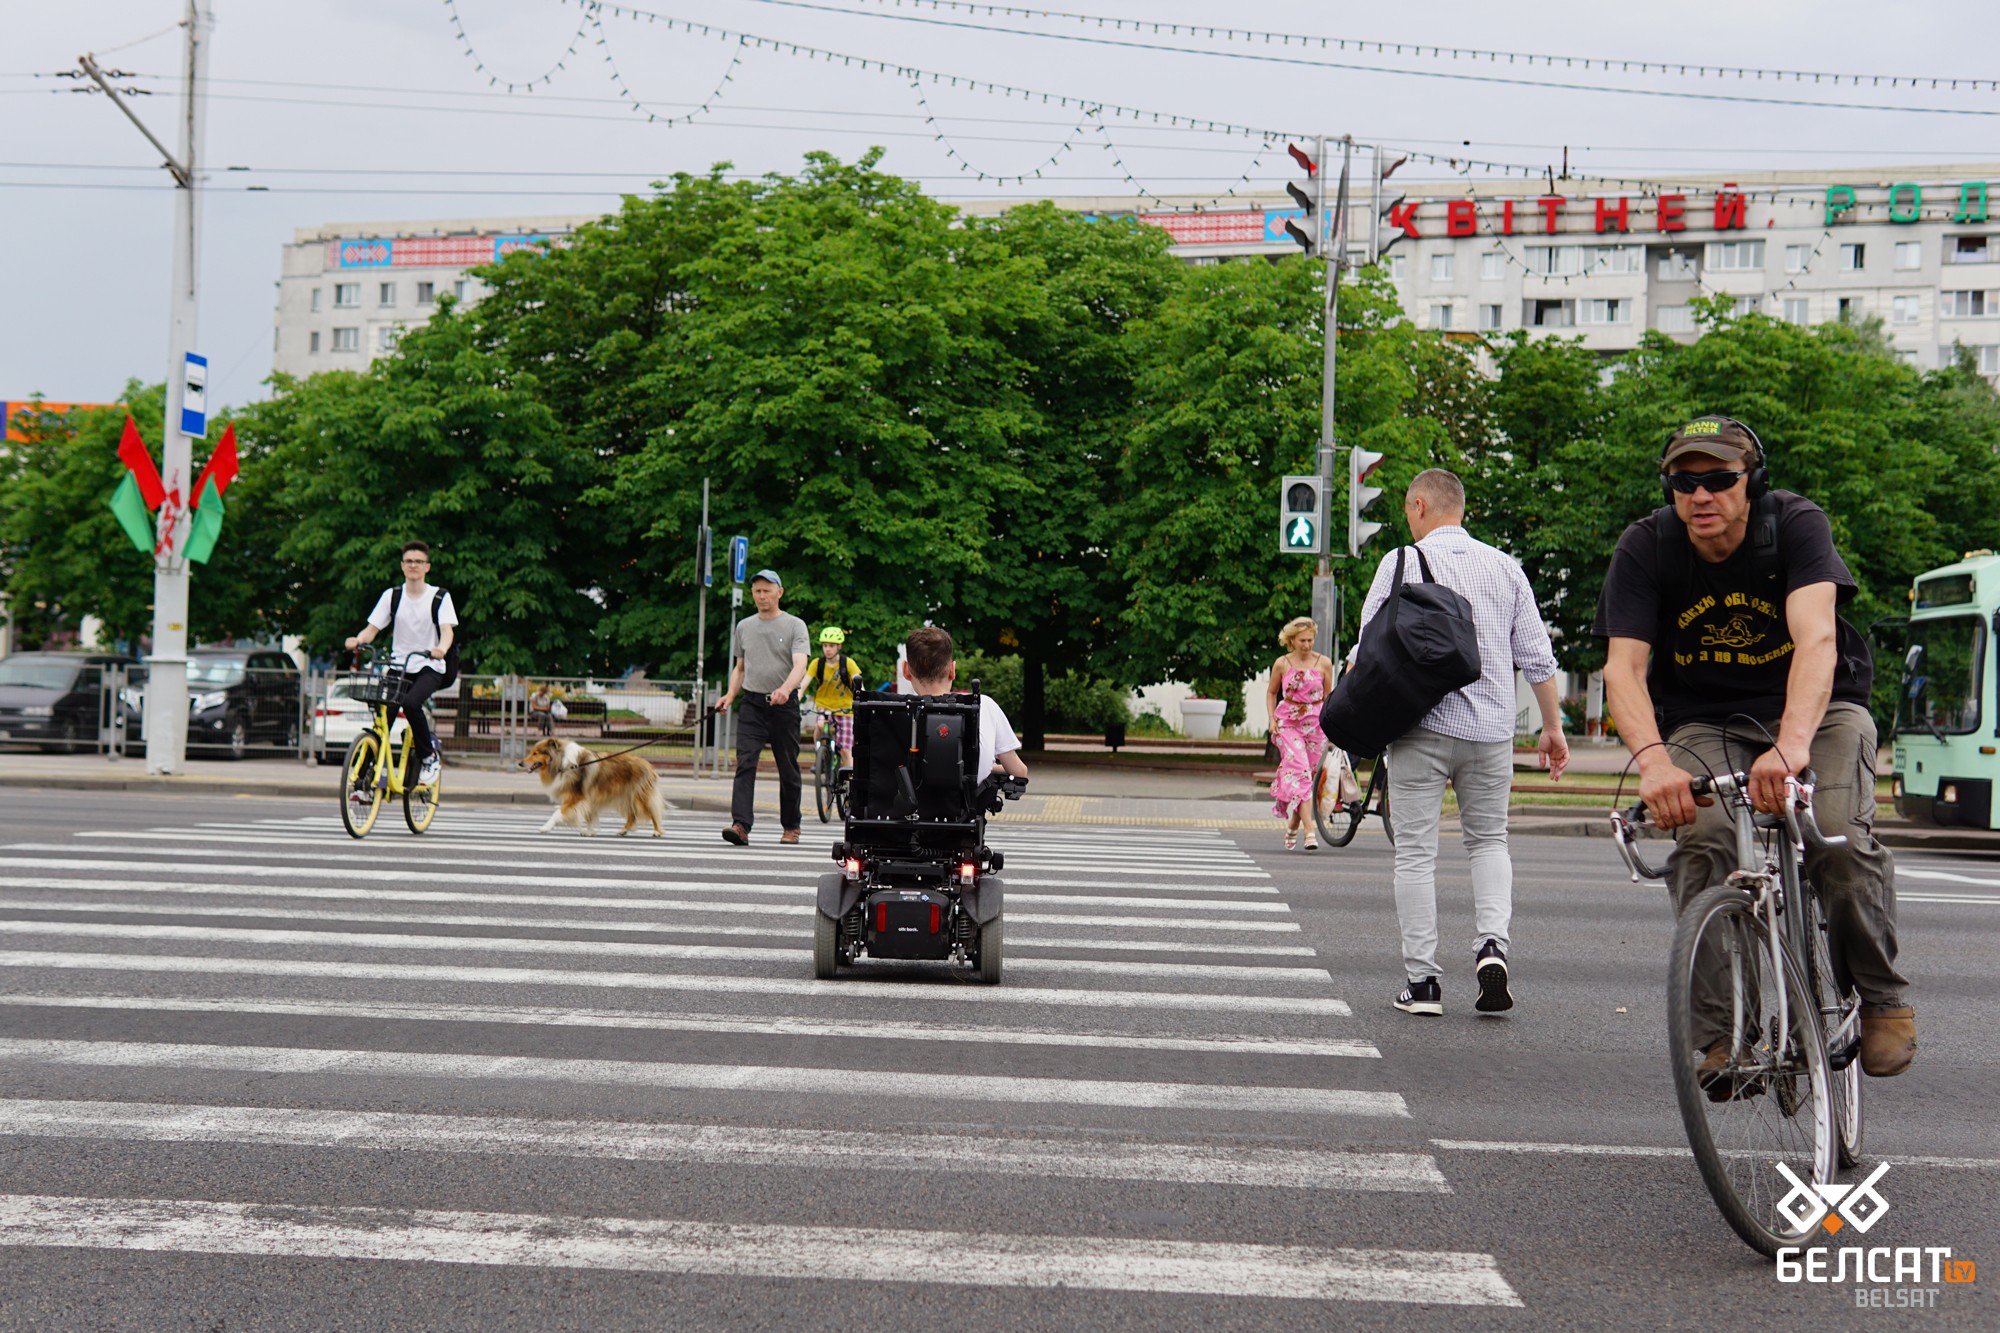 Максим Семашко переезжает на инвалидной коляске дорогу по пешеходному переходу. Минск, Беларусь. 24 июня 2021 года. Фото: АК / Белсат